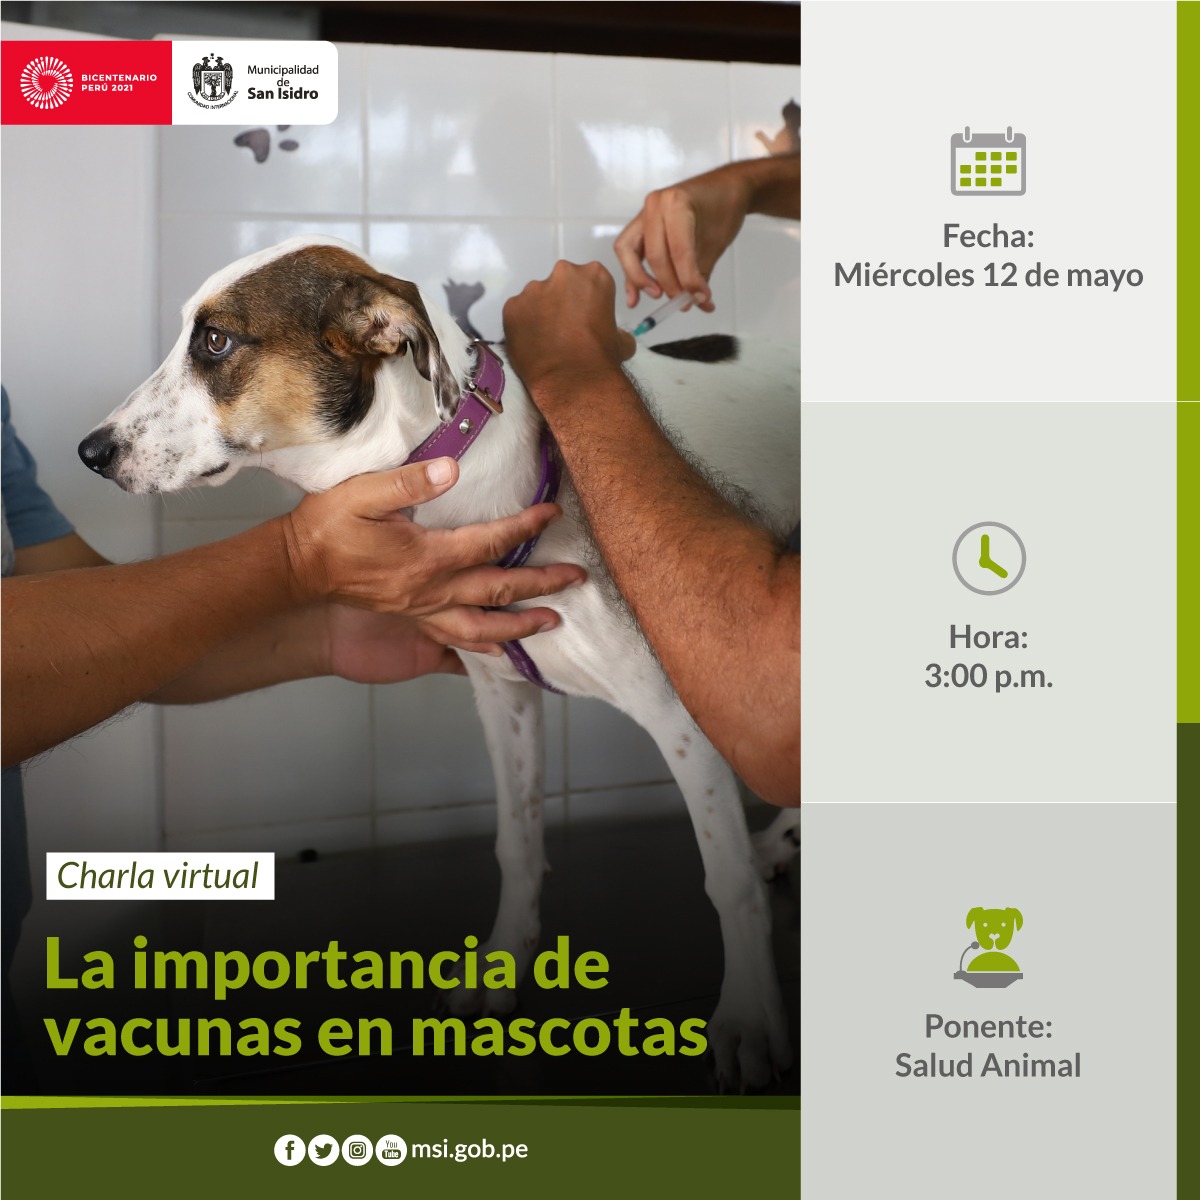 La importancia de vacunas en mascotas